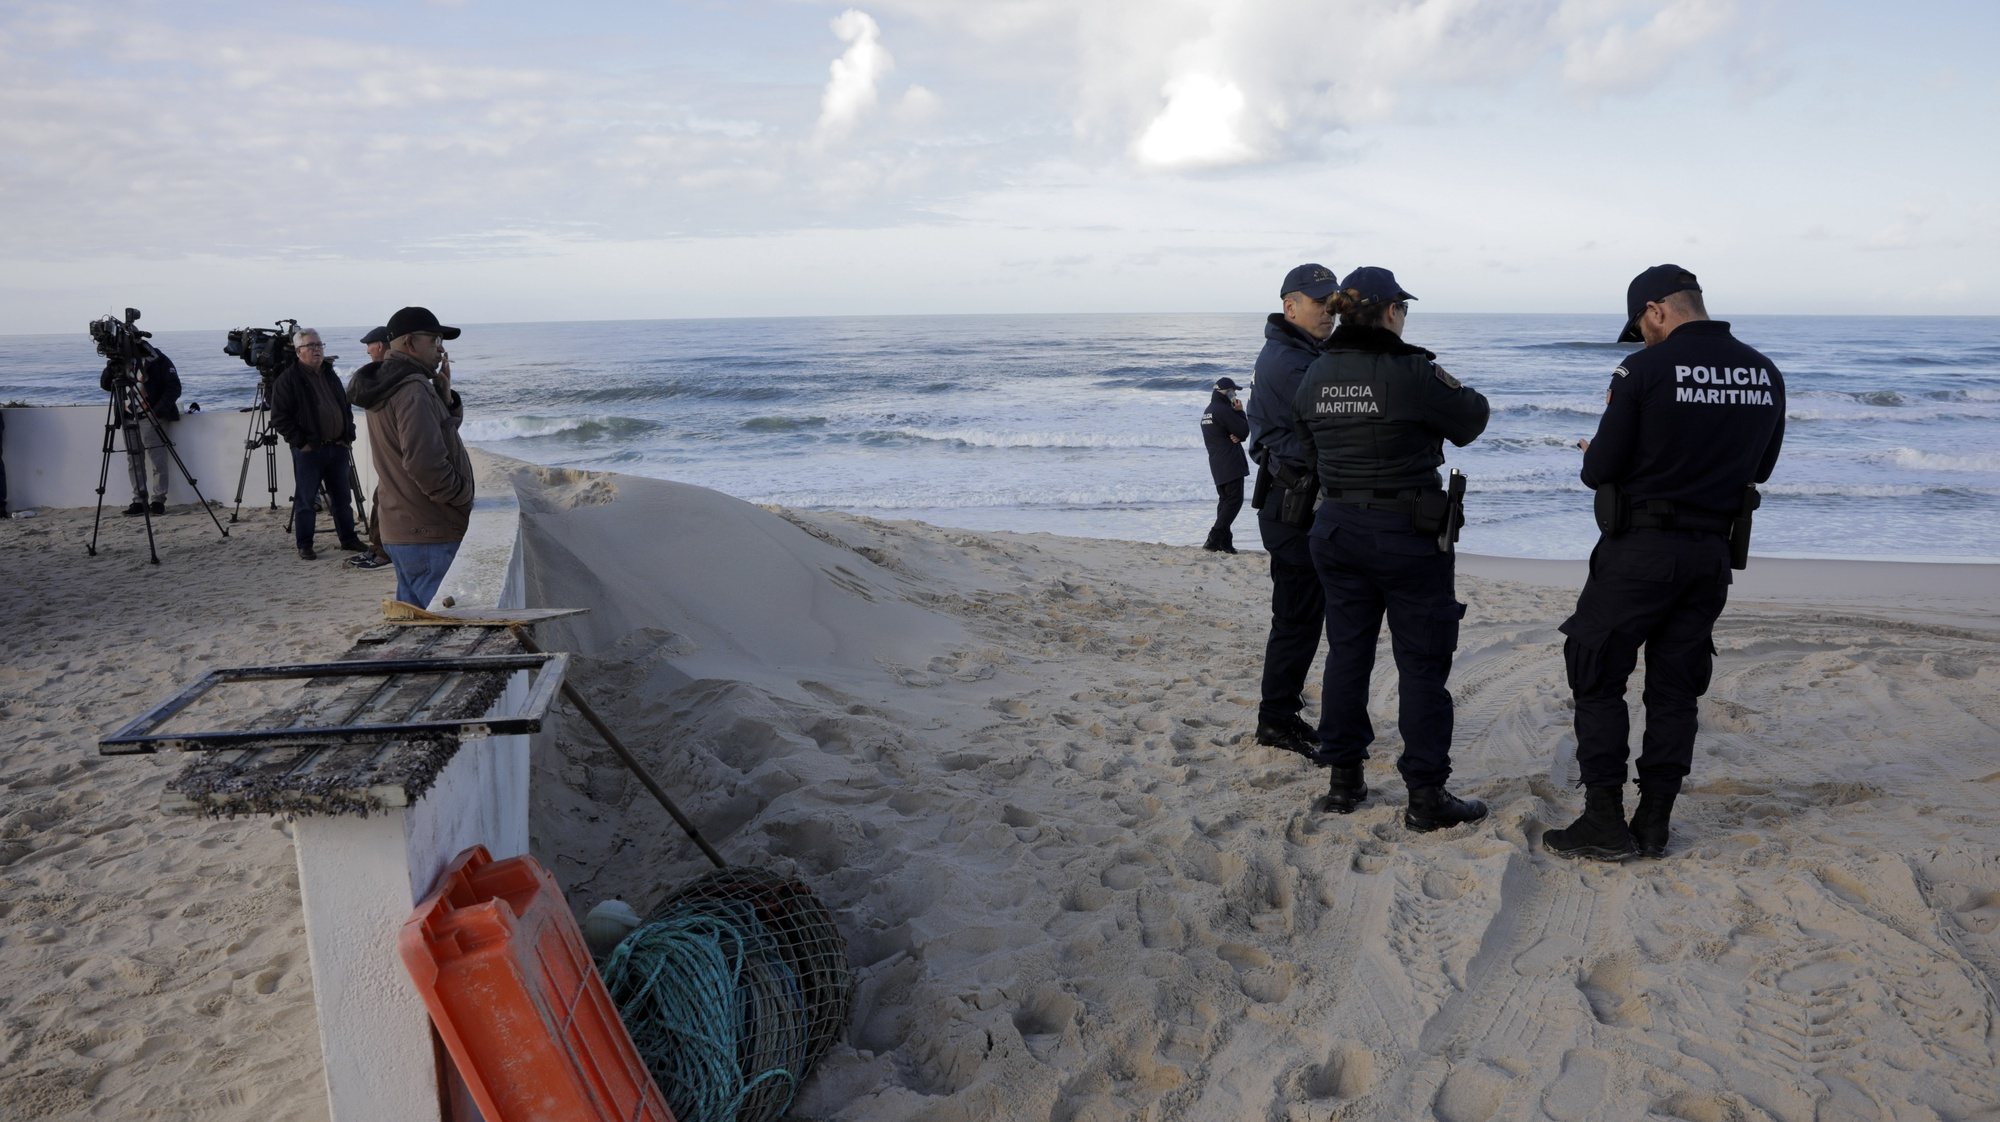 Elementos da Policia Marítima participam nas buscas dos três tripulantes de uma embarcação desaparecida na sexta-feira ao largo na Nazaré, na Praia do Pedrogão em Leiria. PAULO CUNHA/LUSA